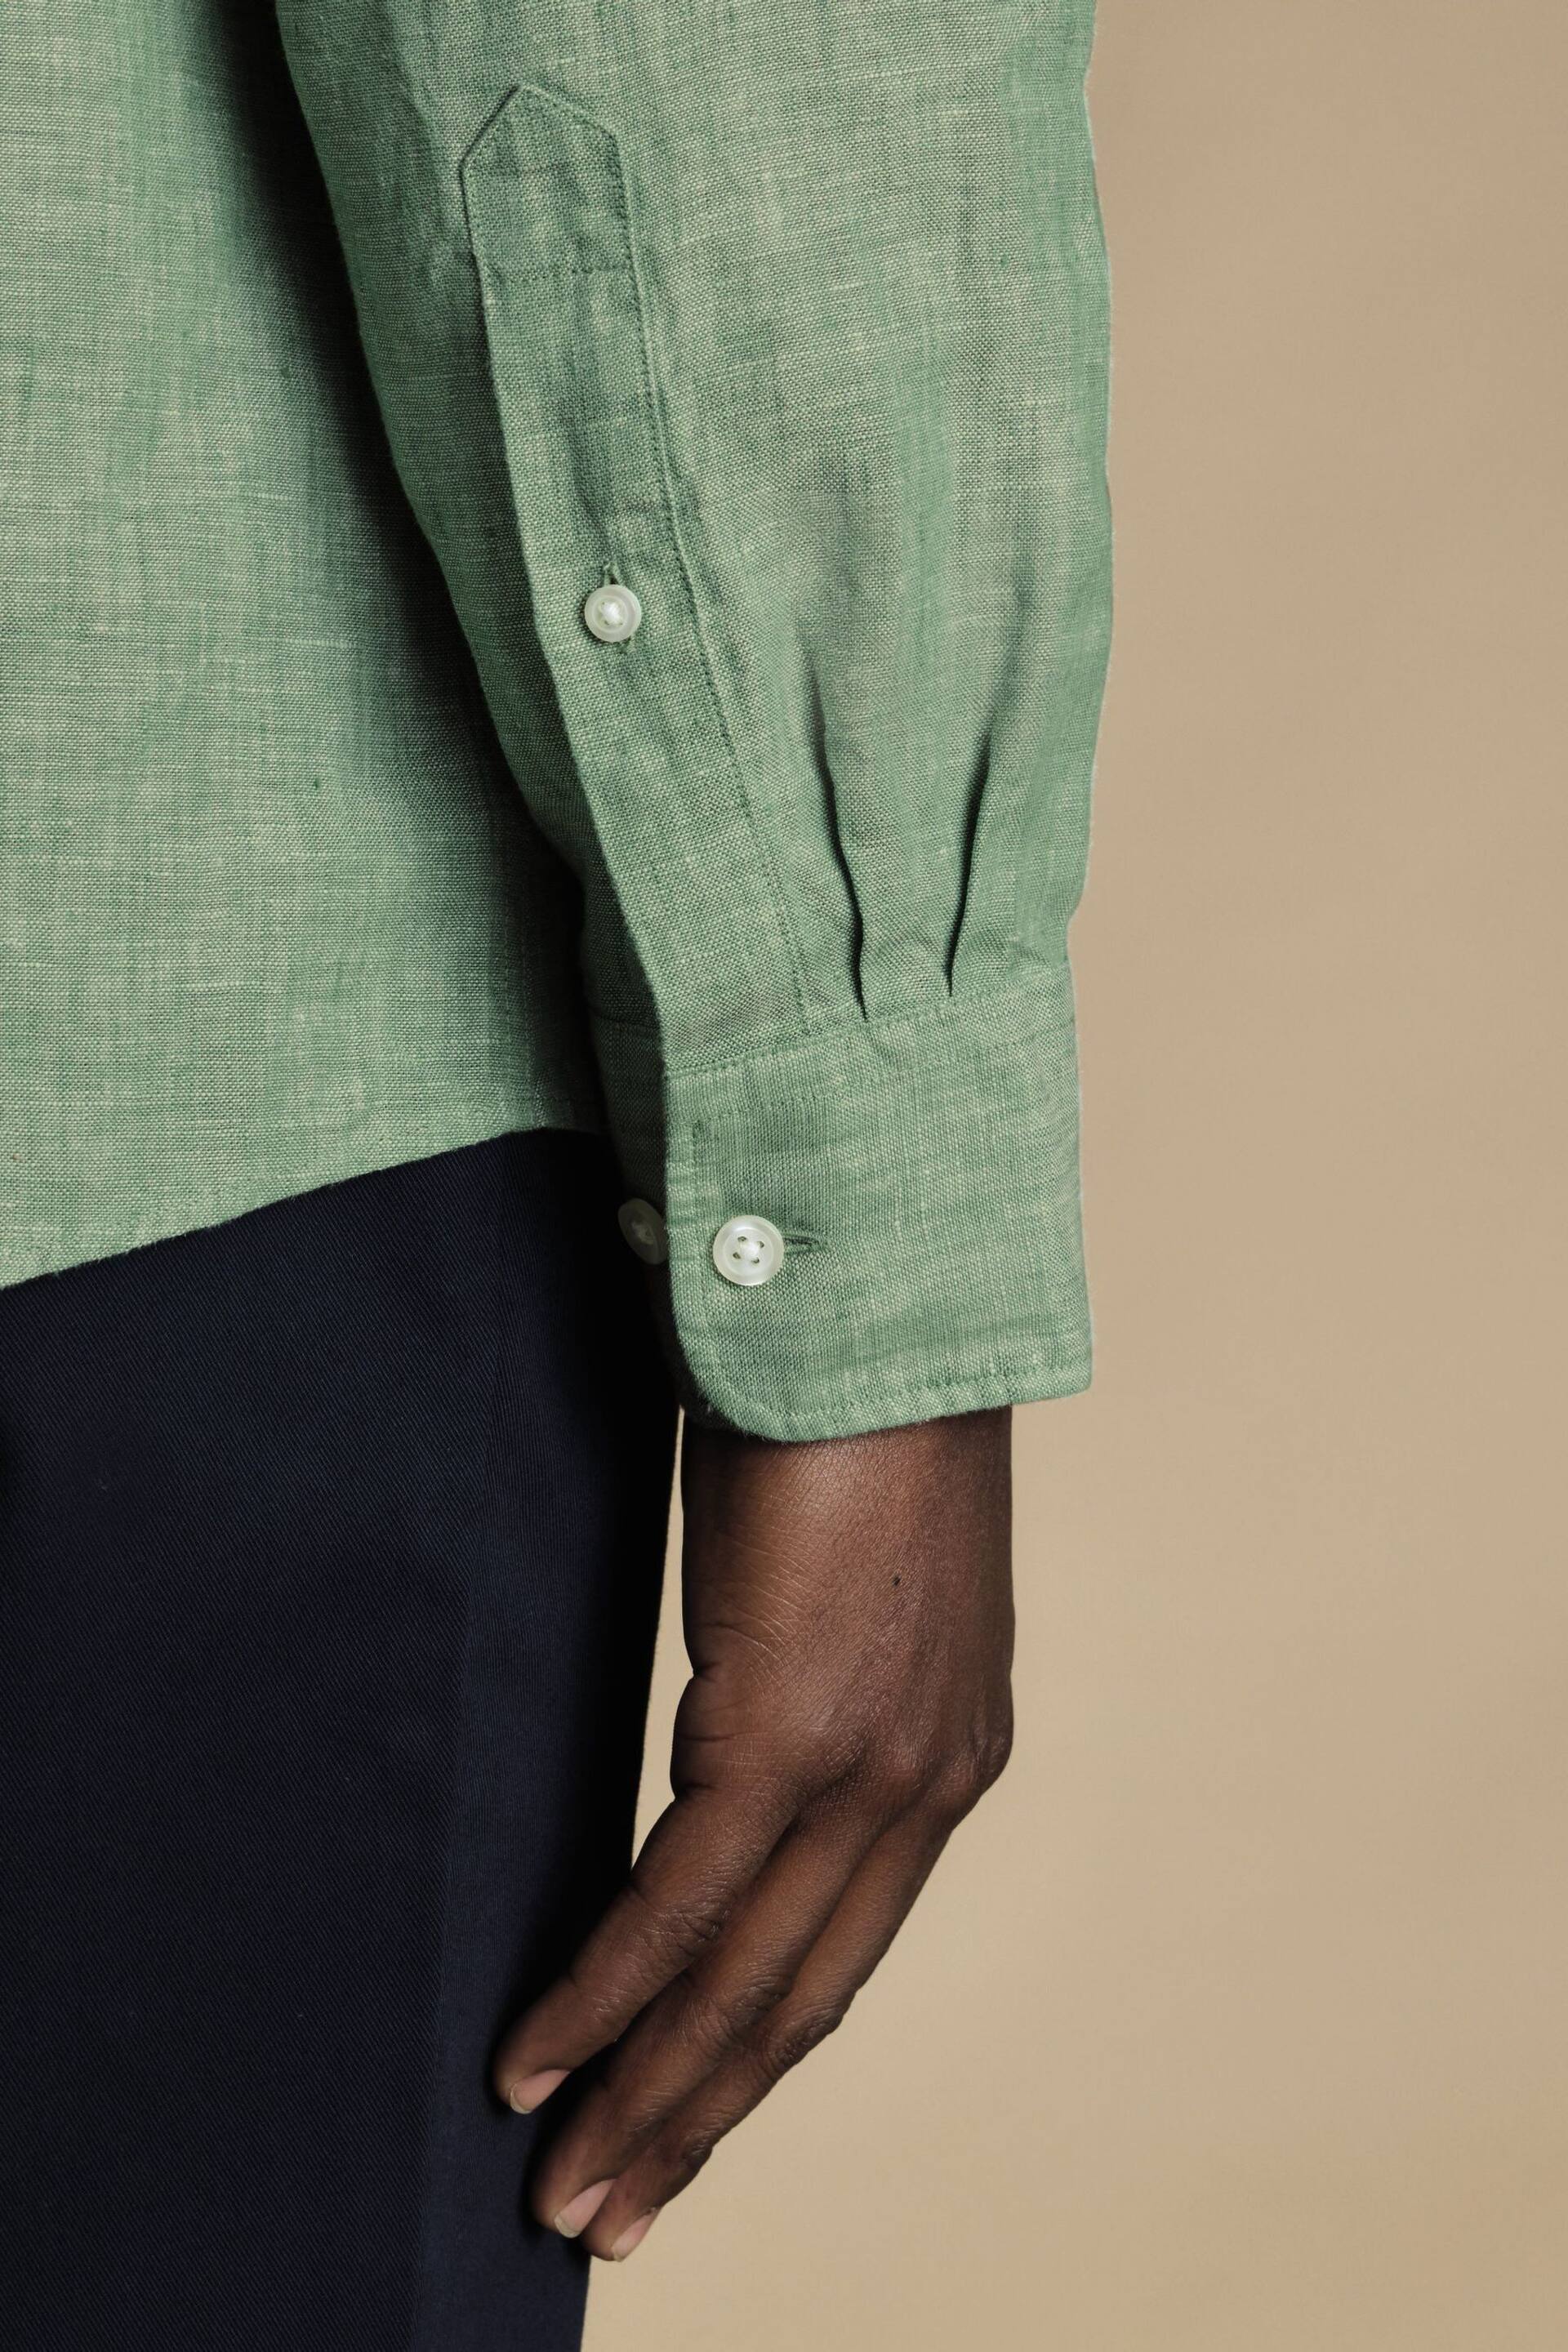 Charles Tyrwhitt Green Slim Fit Plain Short Sleeve Pure Linen Full Sleeves Shirt - Image 3 of 6